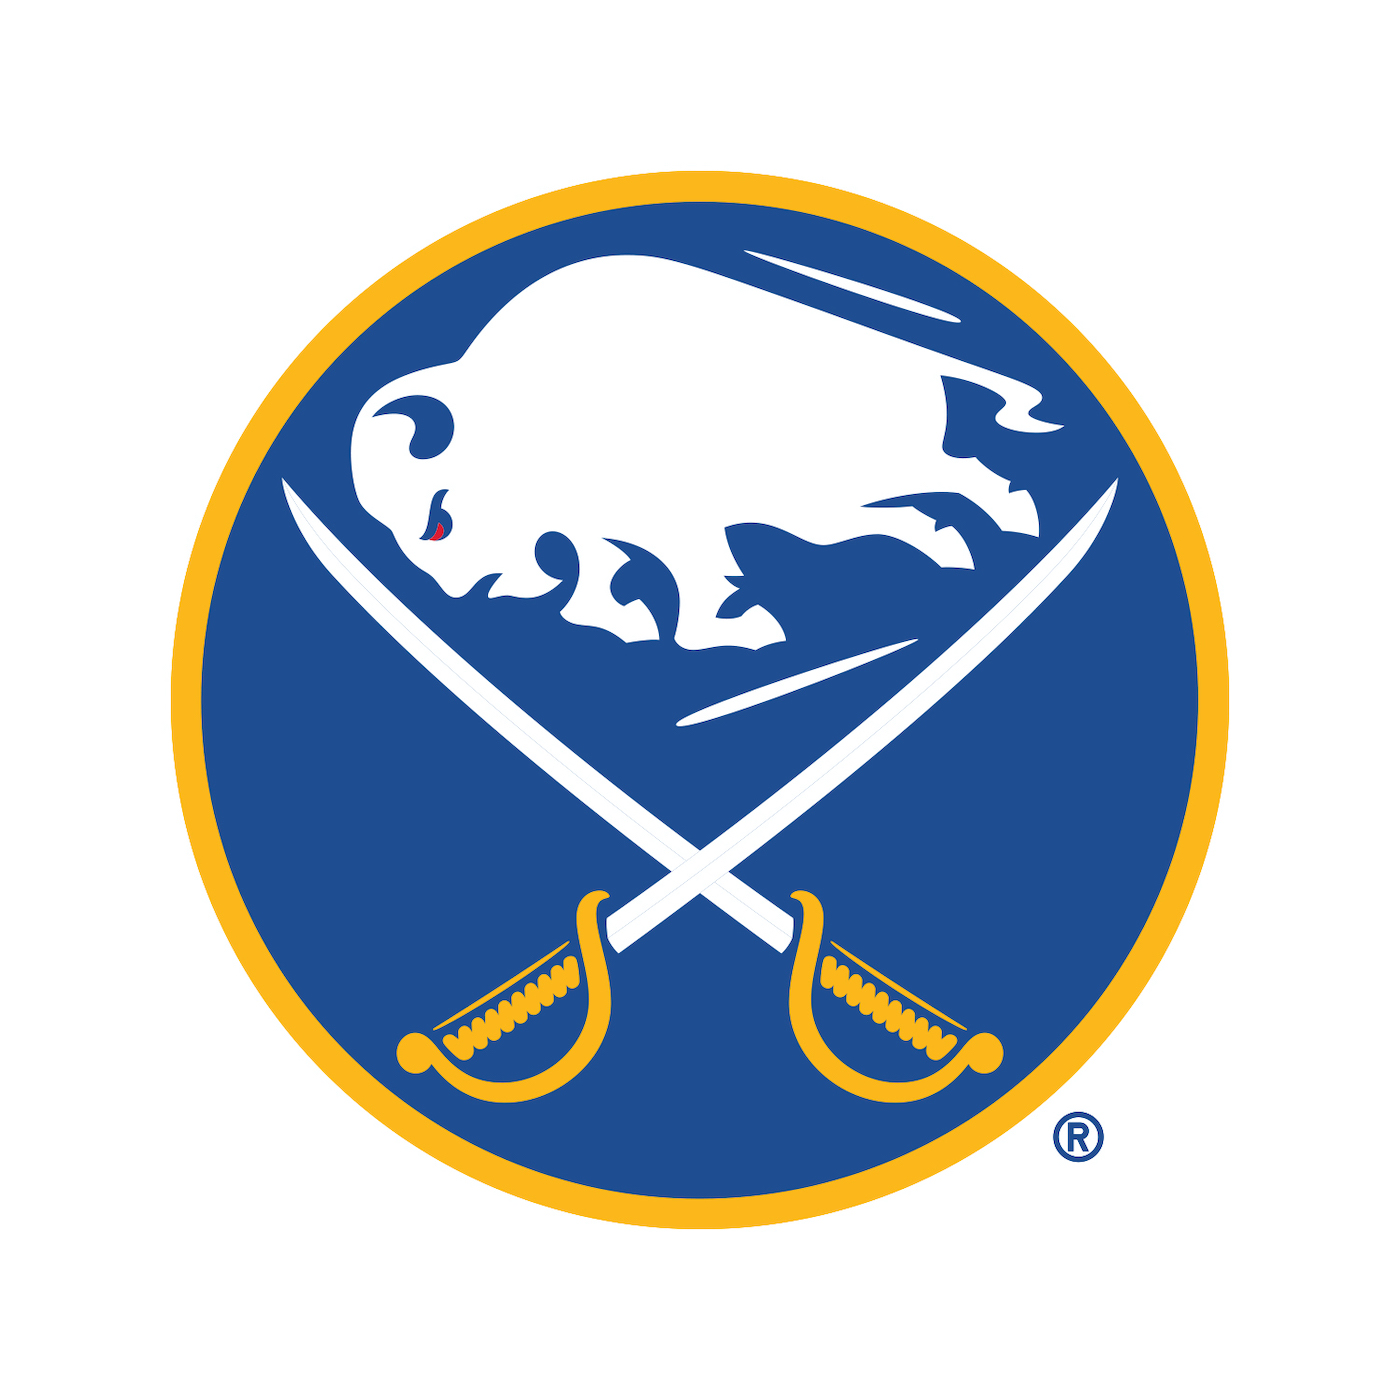 (Logo courtesy of the Buffalo Sabres)